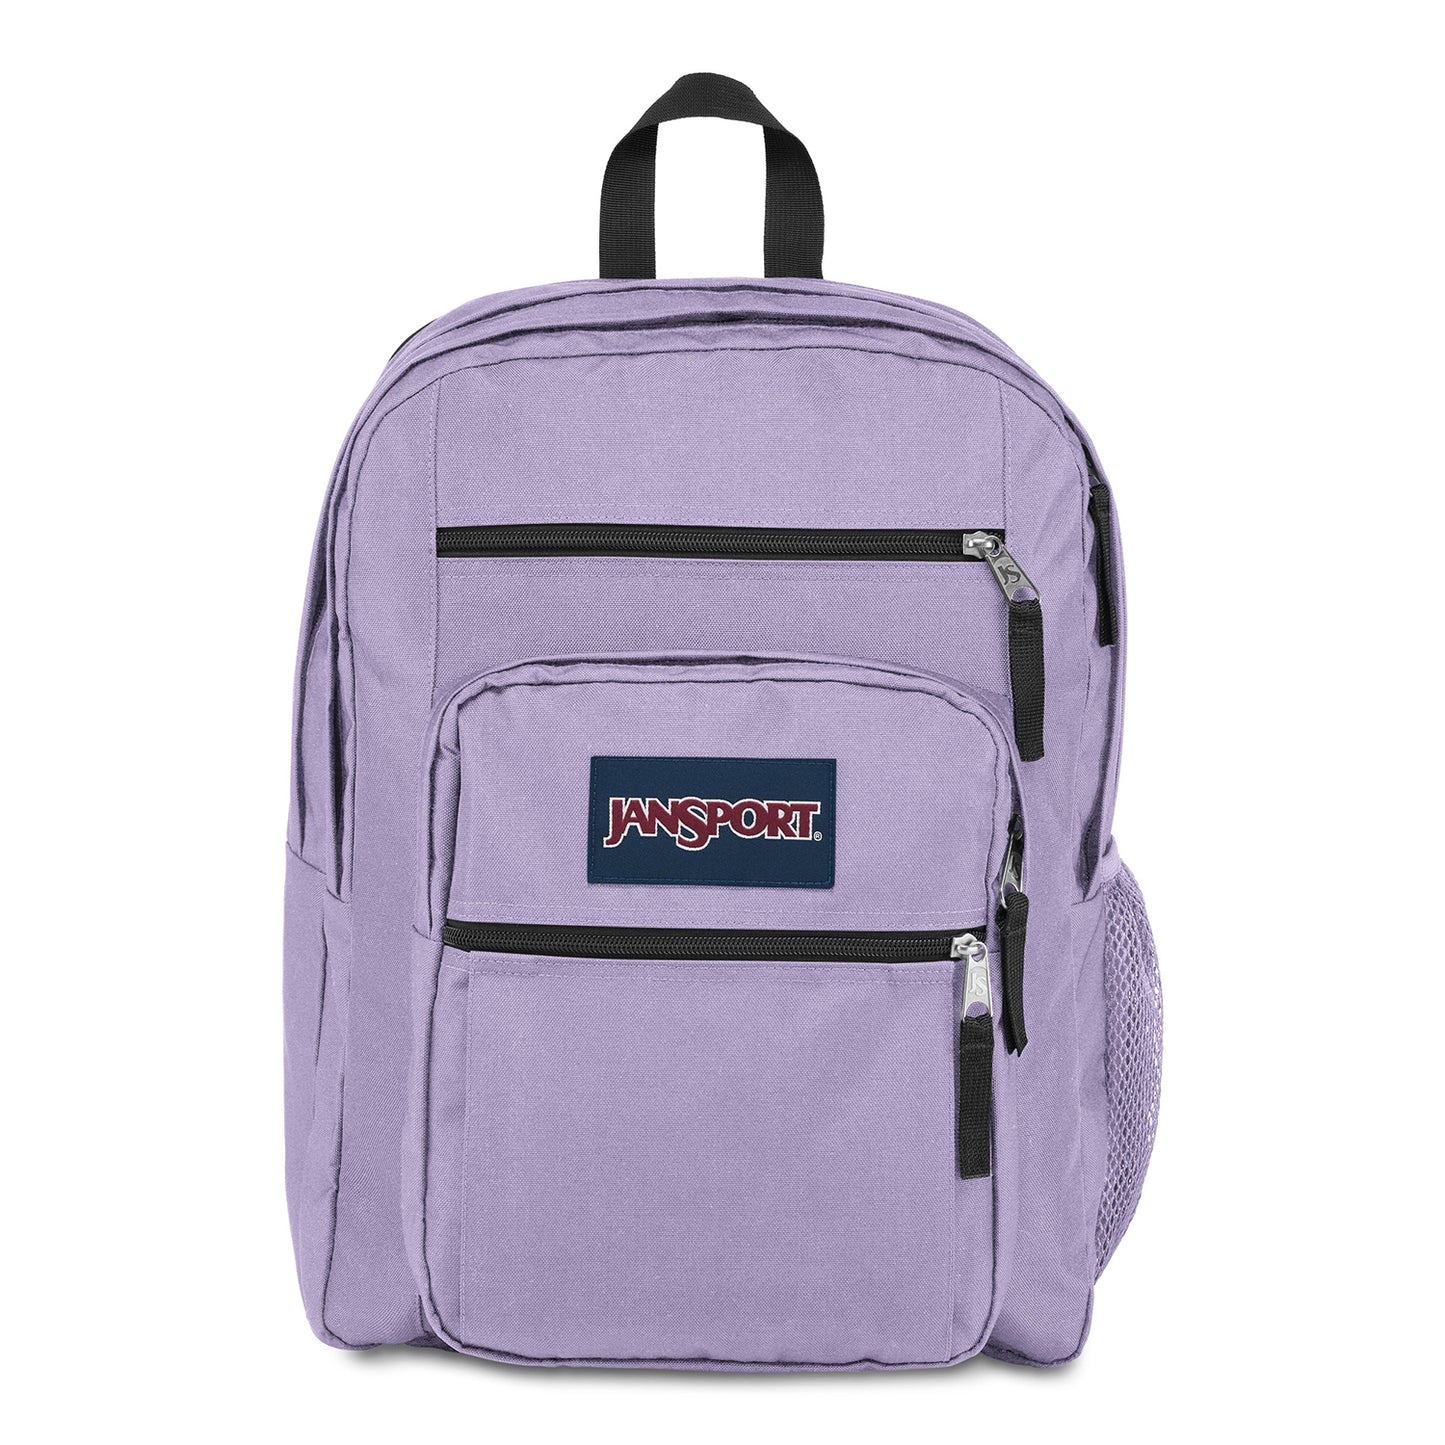 Jansport Backpack, BIG STUDENT, Vivid Lilac